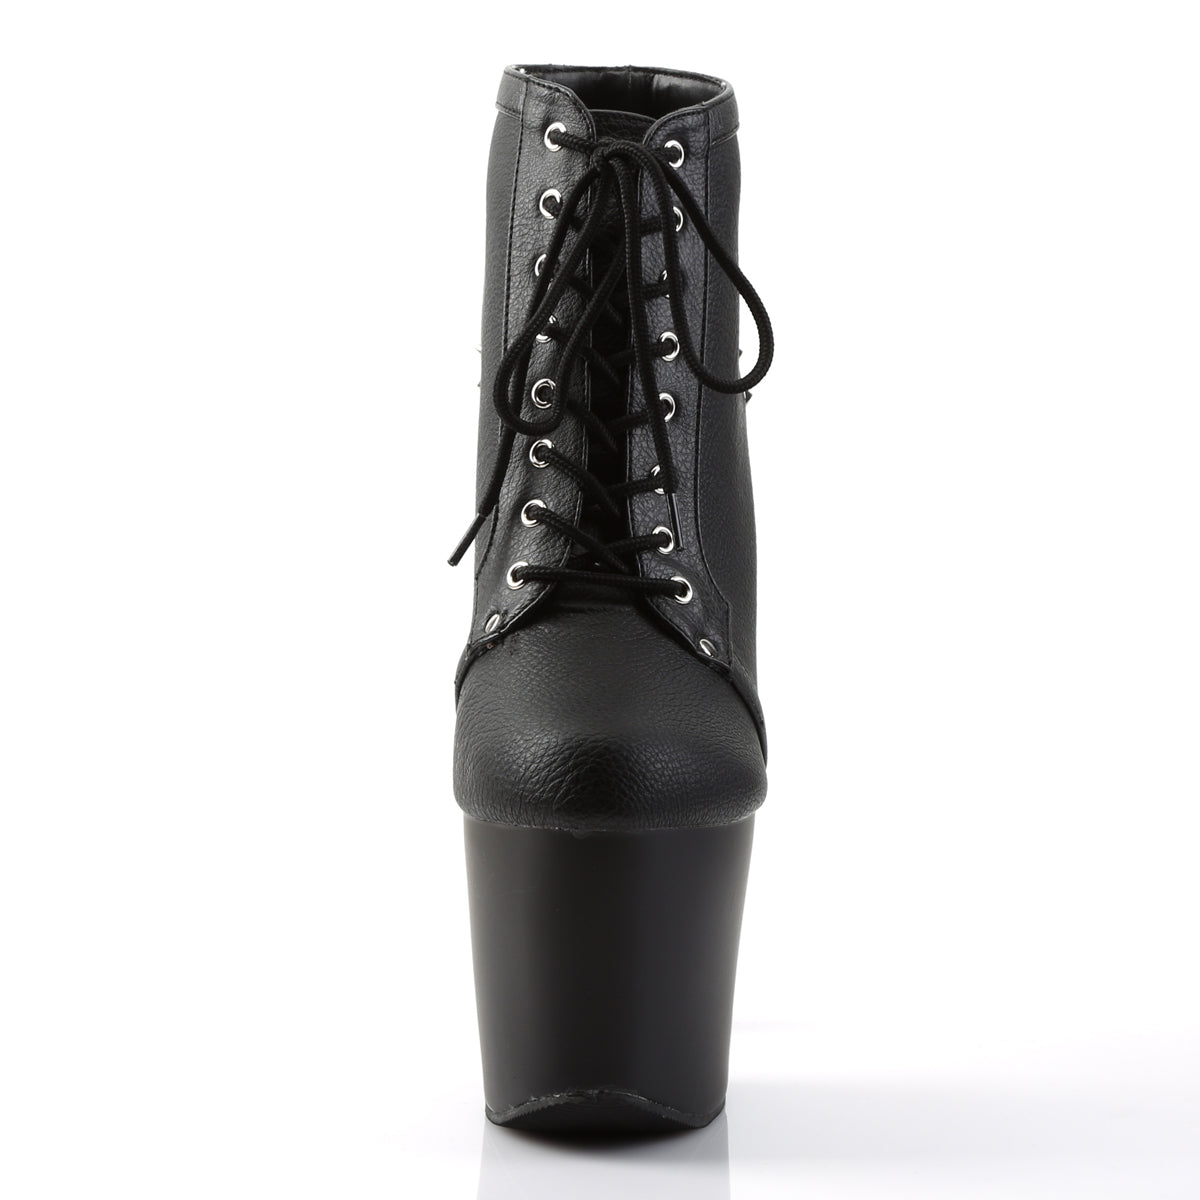 FEARLESS-700-28 Pleaser 7 Inch Heel Black Pole Dance Shoes-Pleaser- Sexy Shoes Alternative Footwear